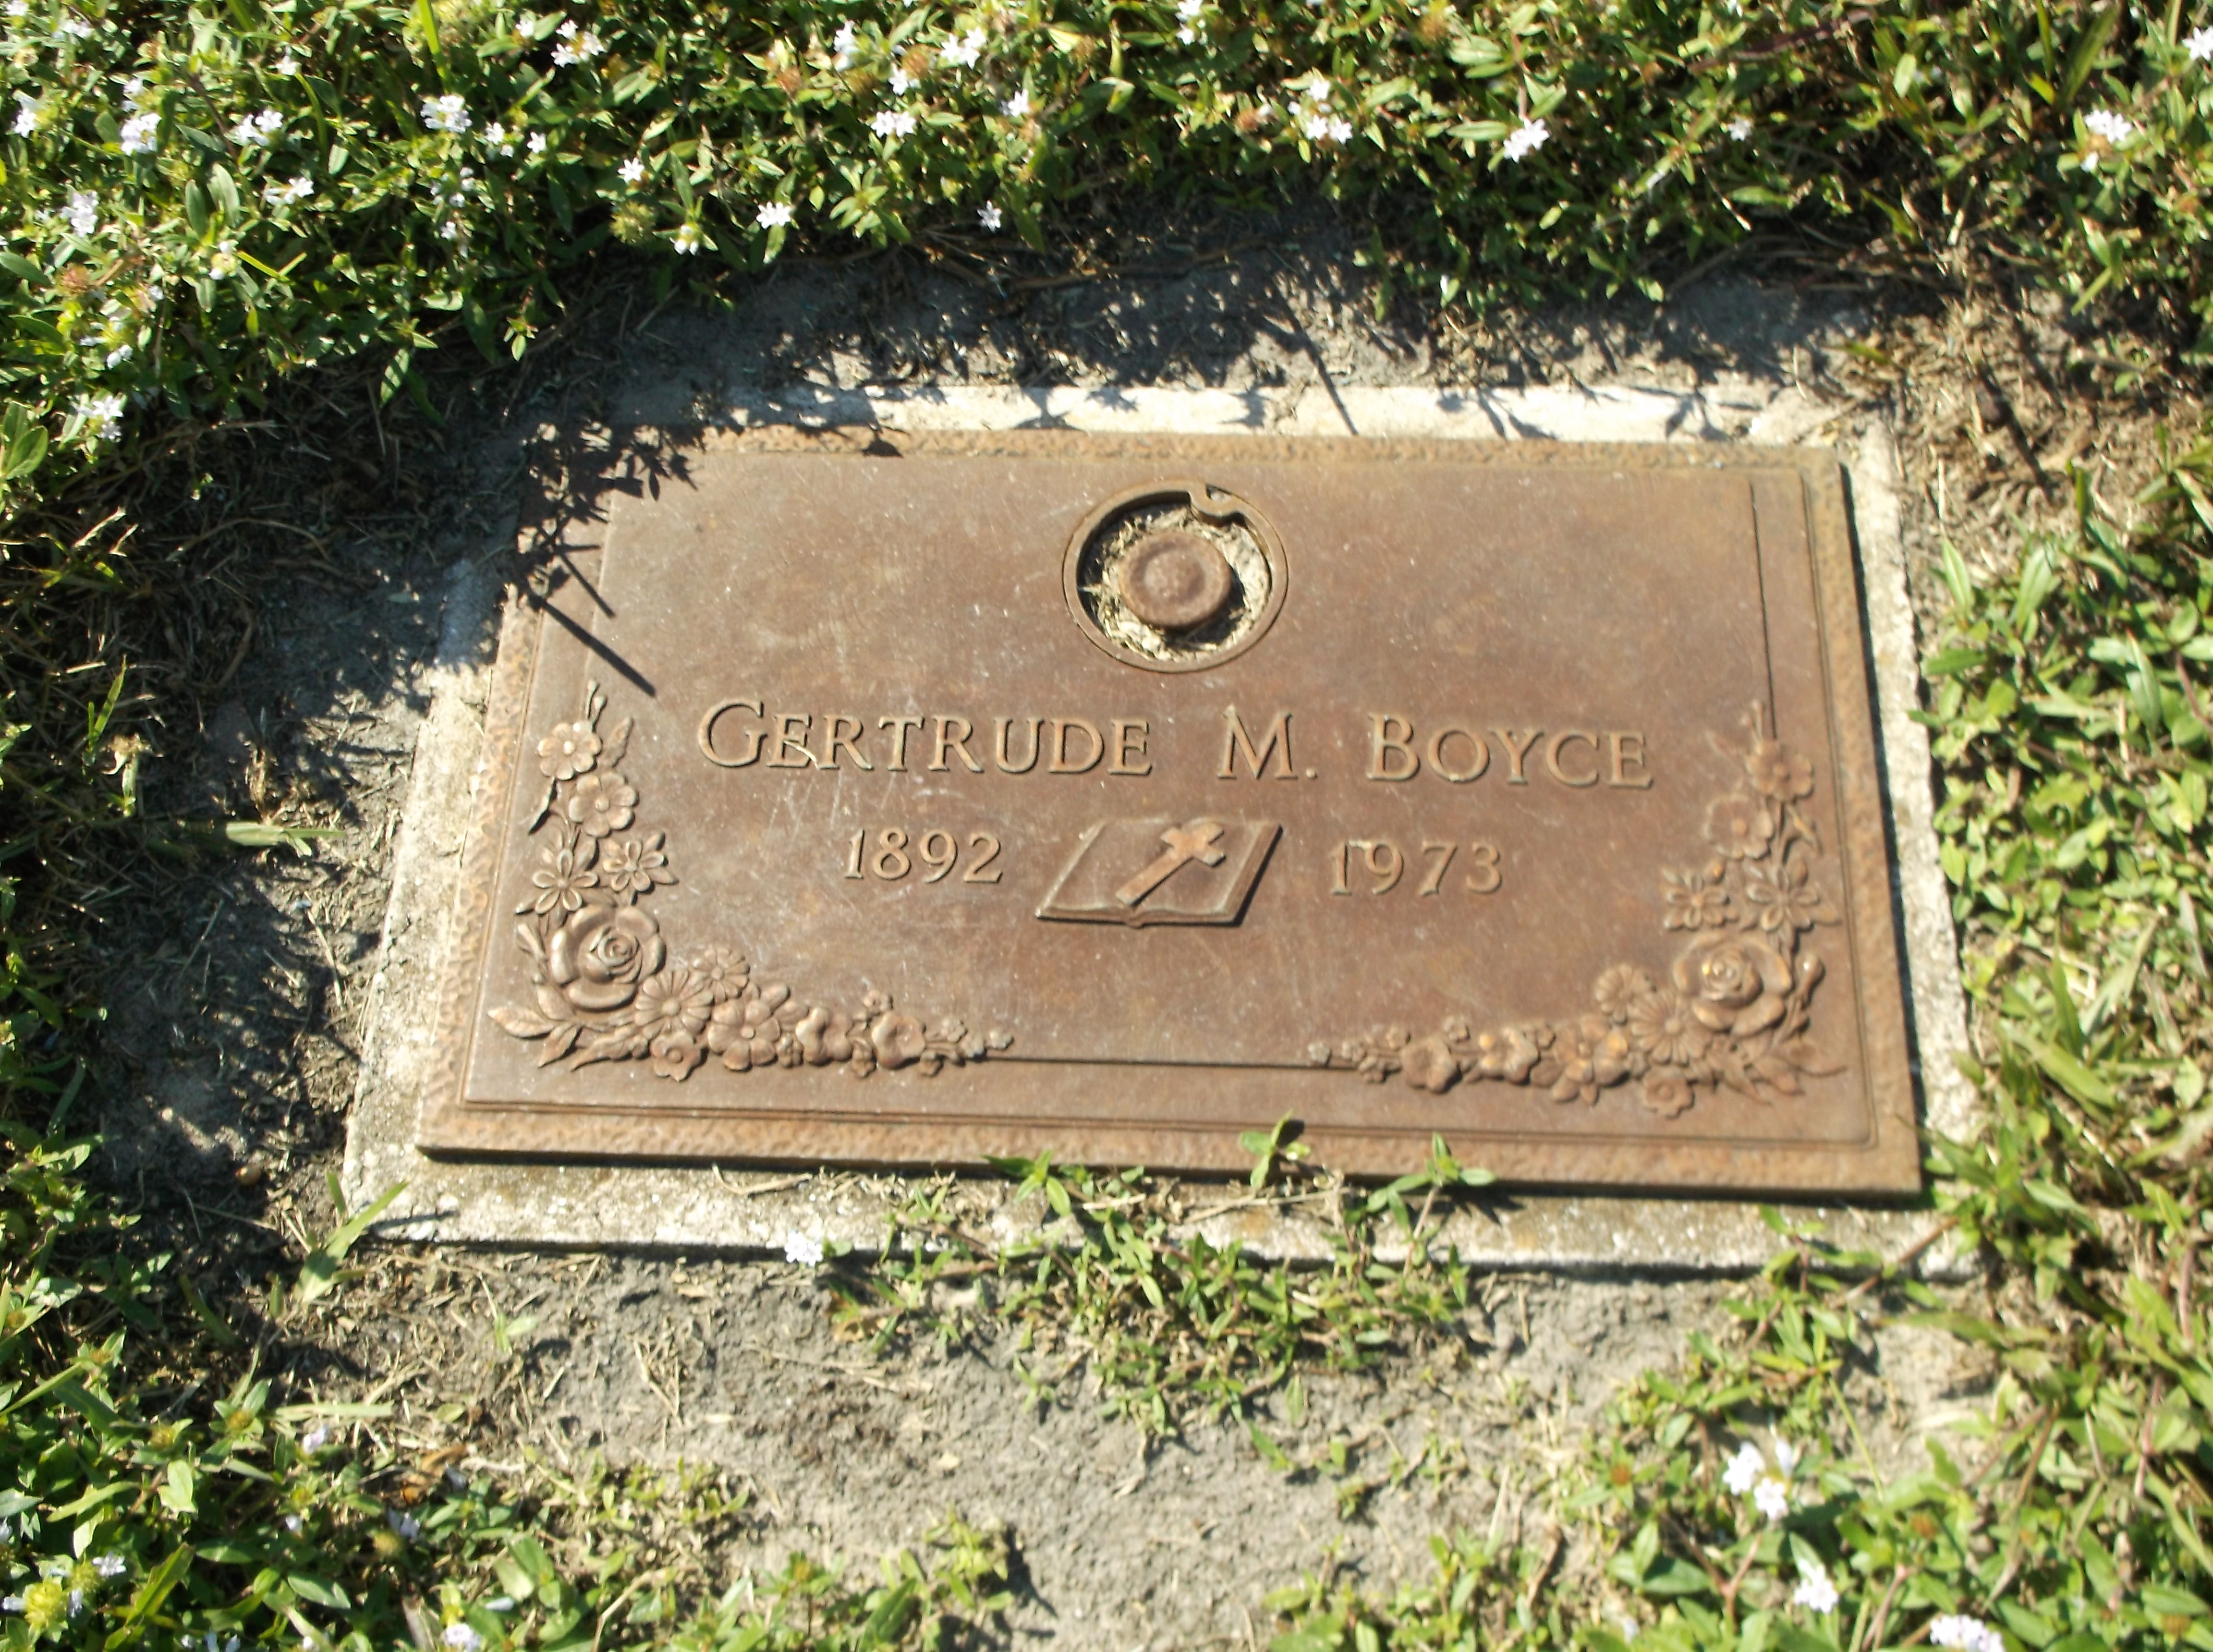 Gertrude M Boyce